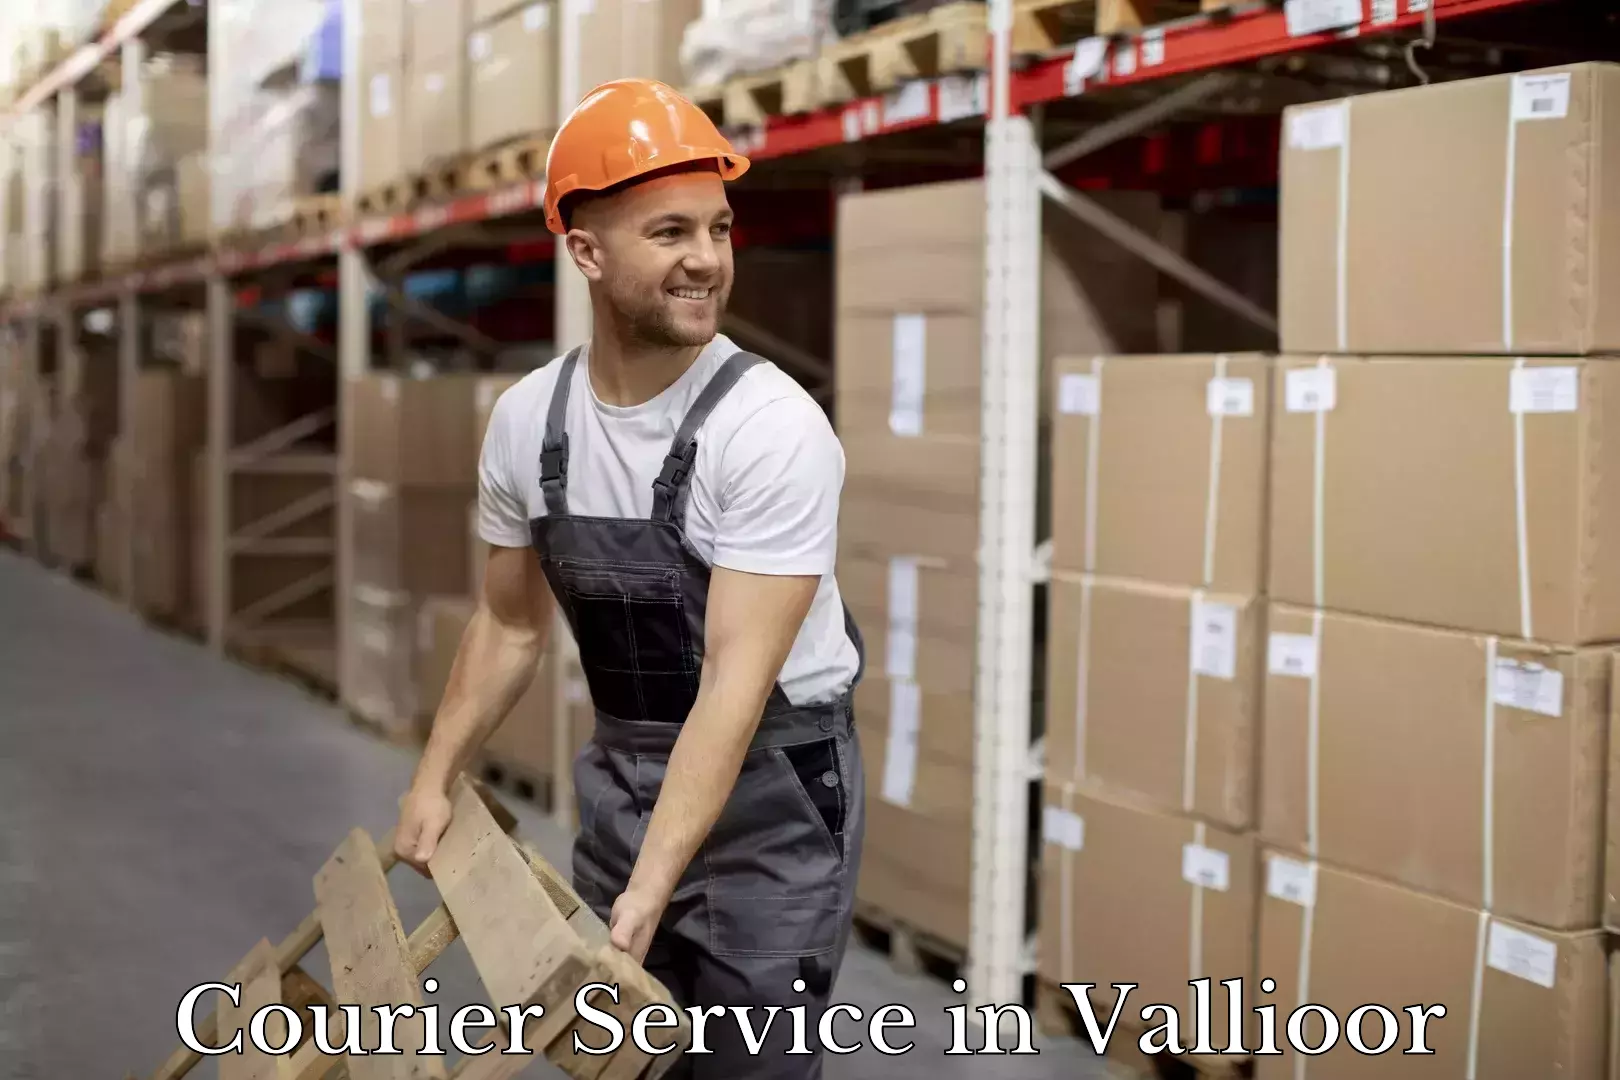 Efficient logistics management in Vallioor